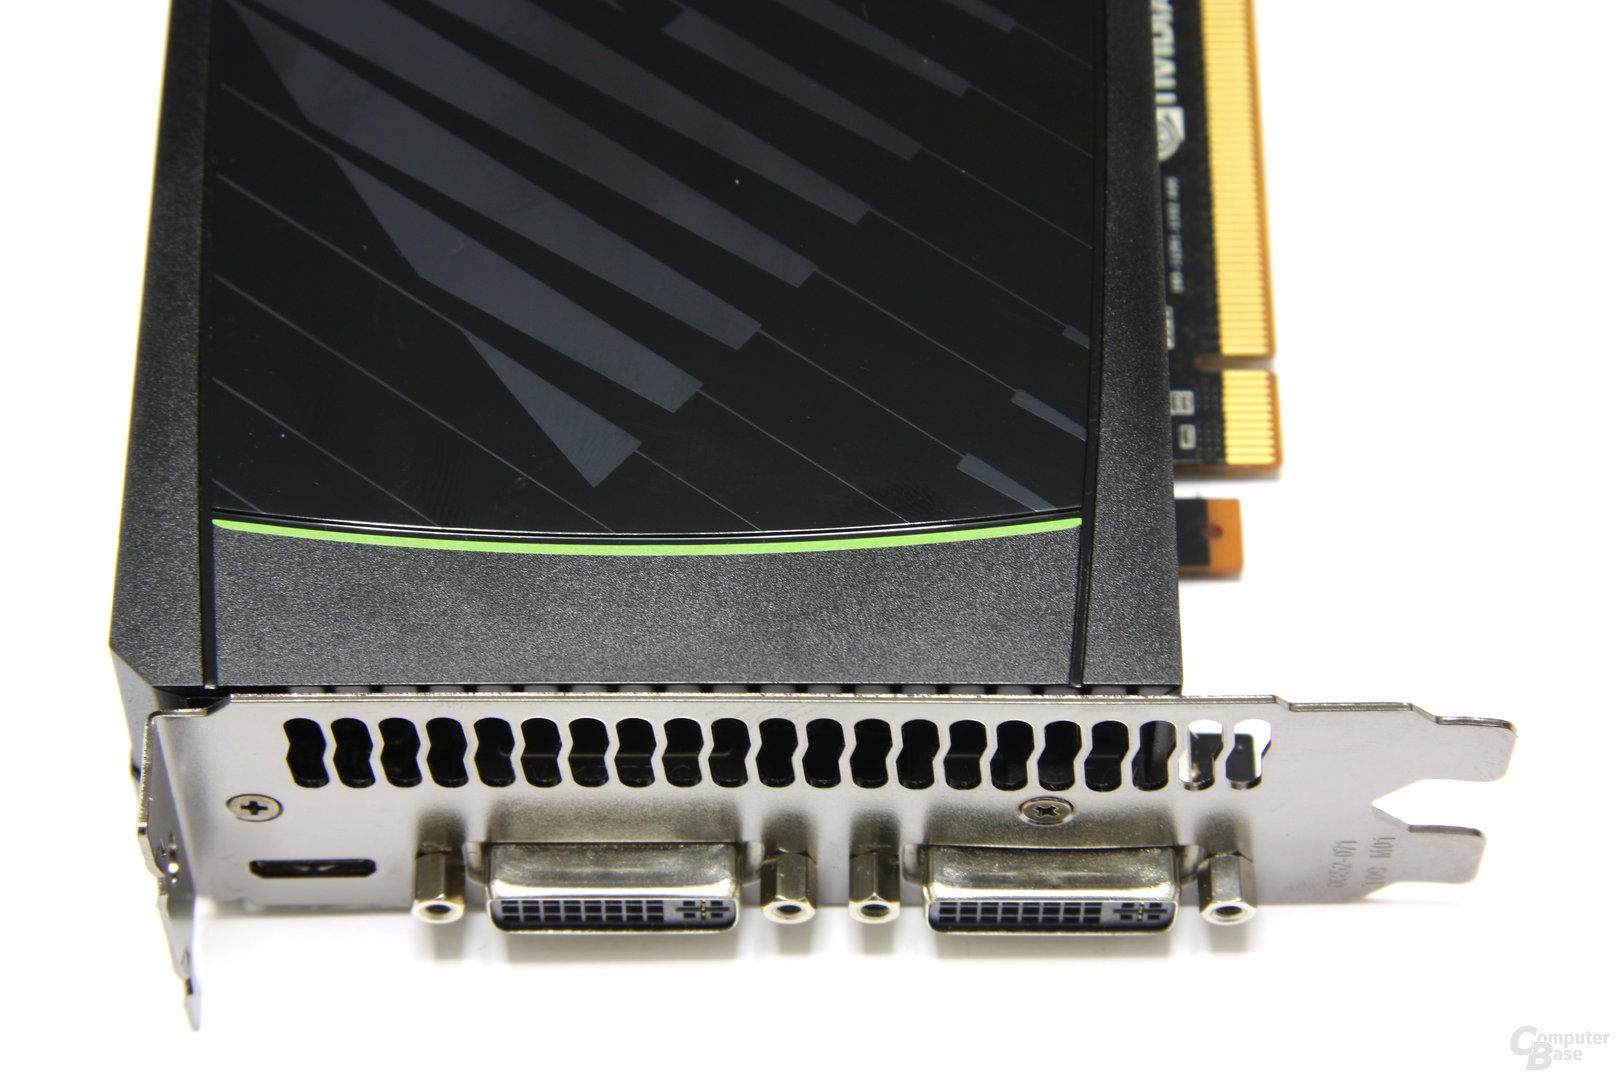 GeForce GTX 580 Anschlüsse